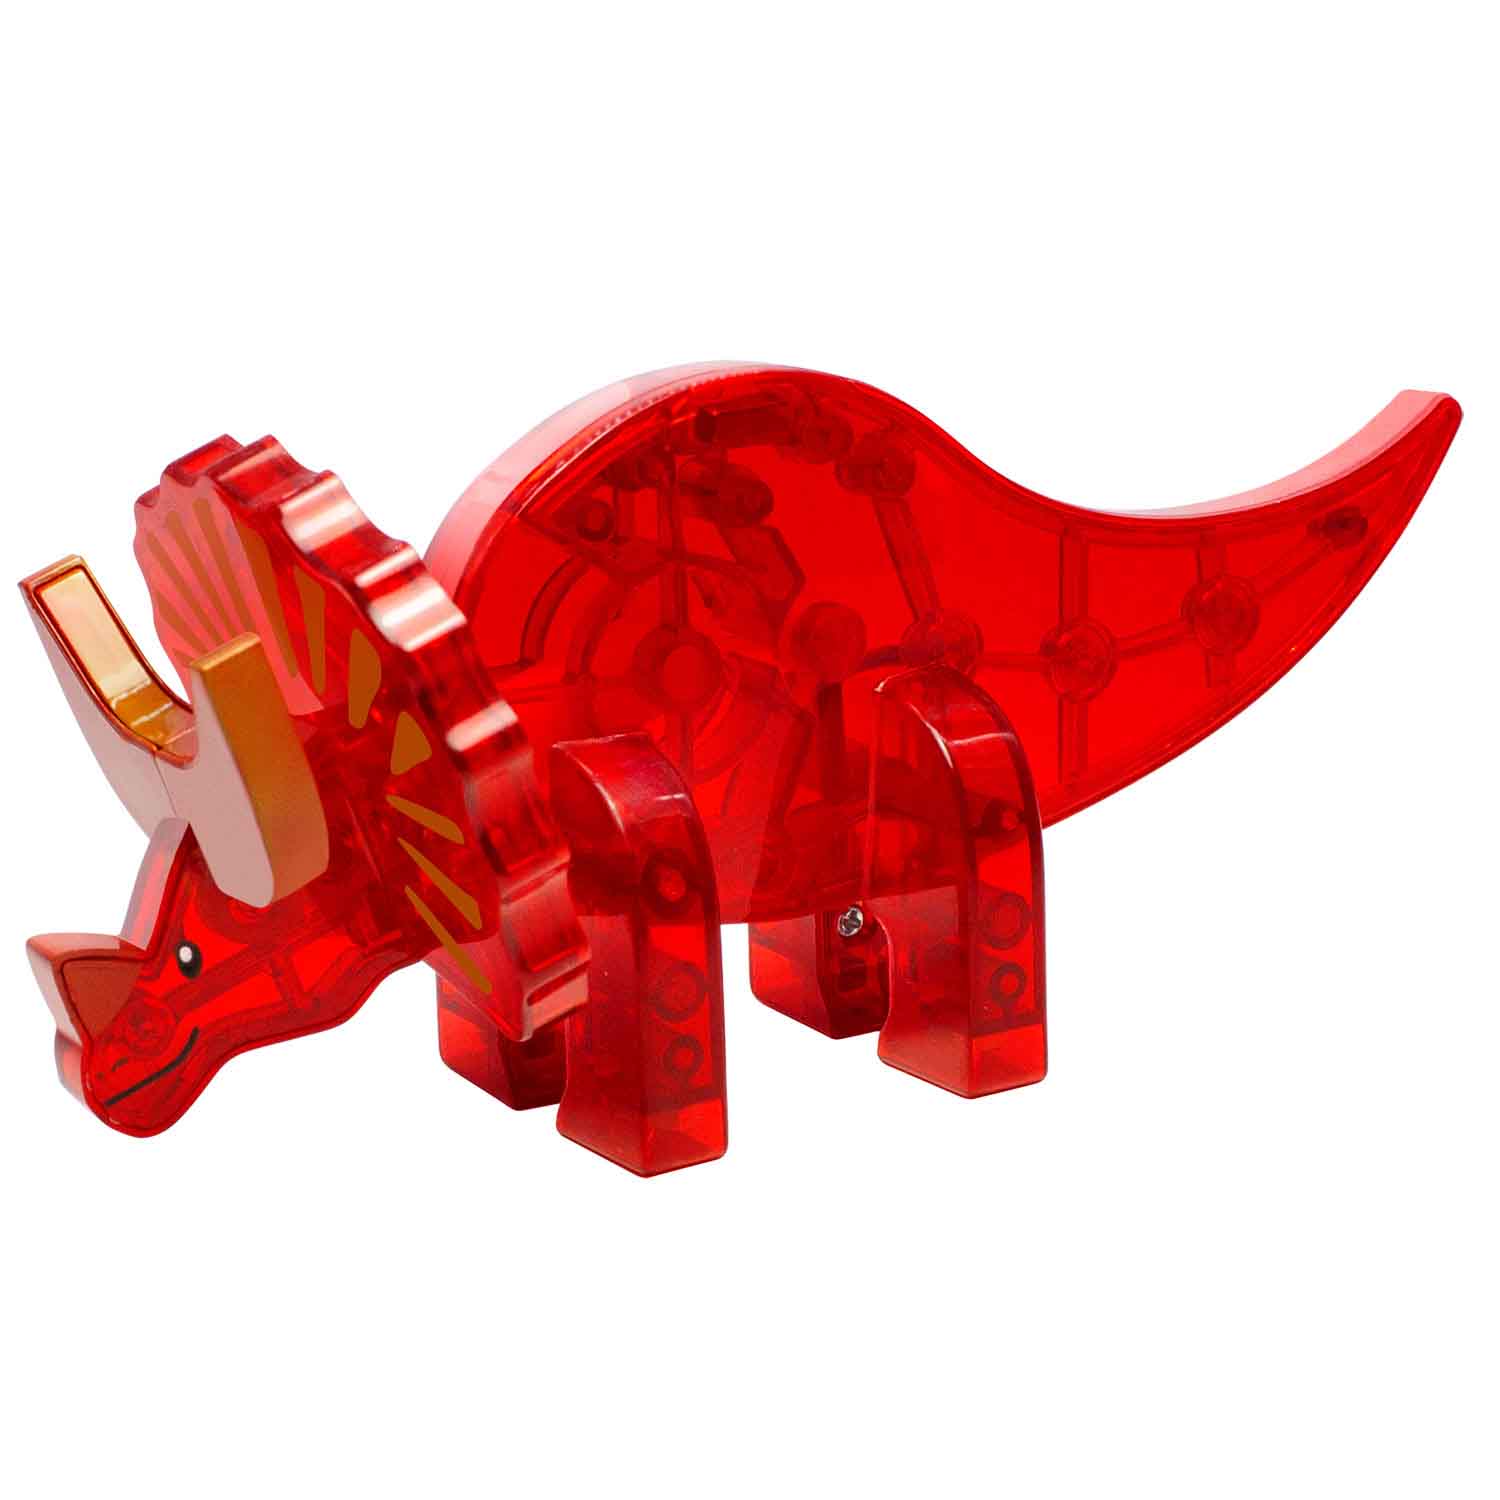 Magna-Tiles® Dinos, 5 Piece Set